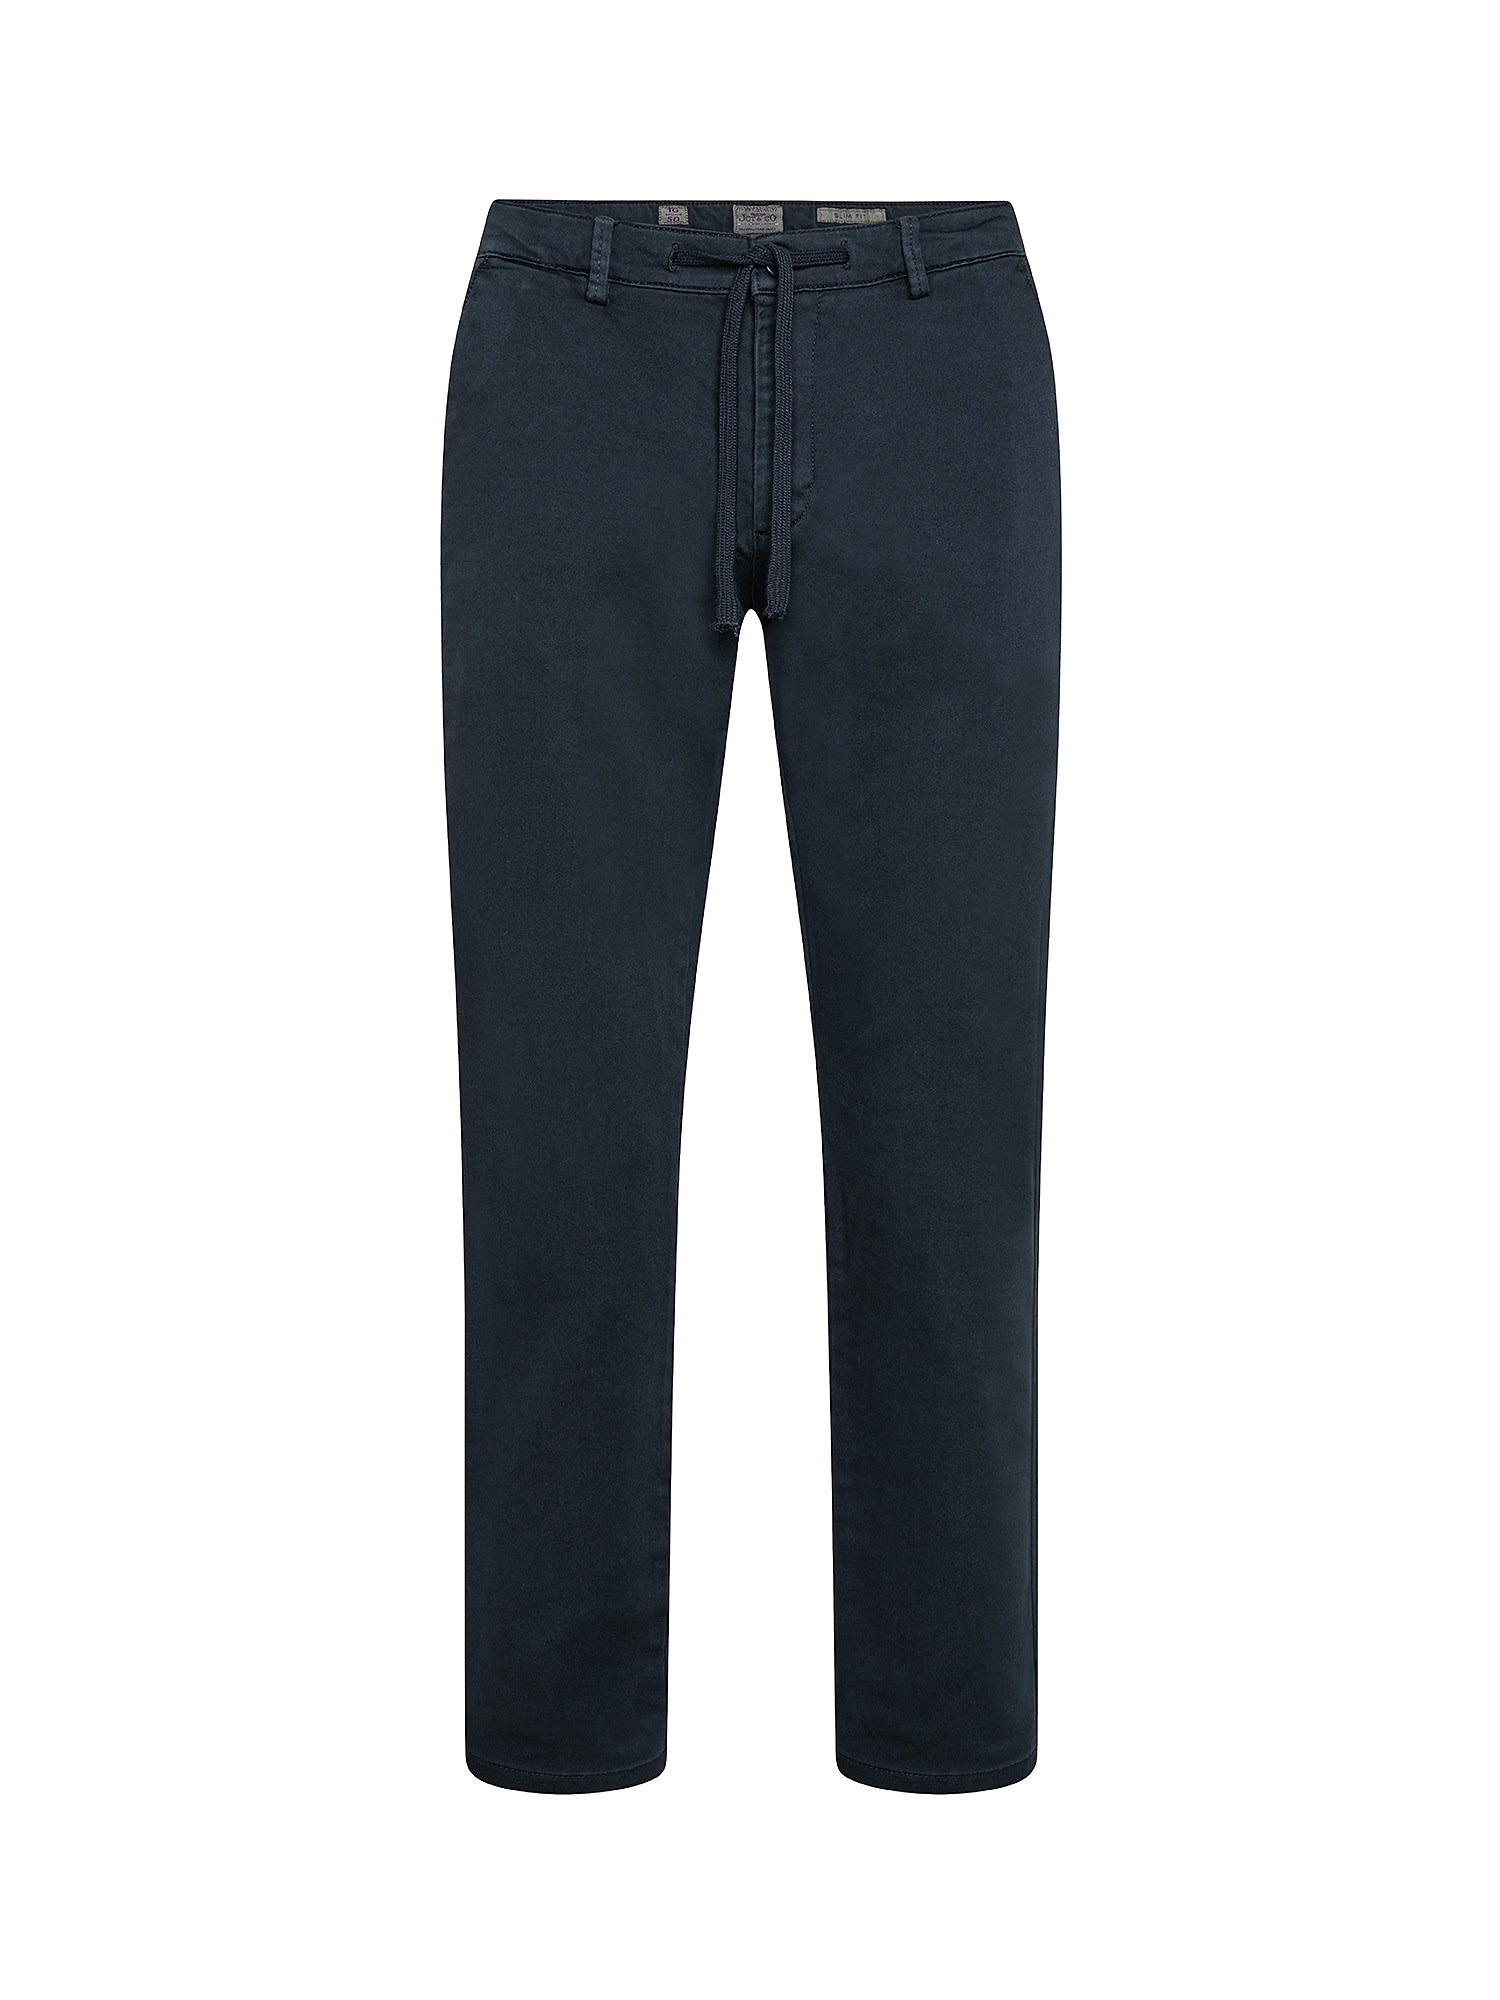 Pantalone chinos regular in felpa, Blu, large image number 0